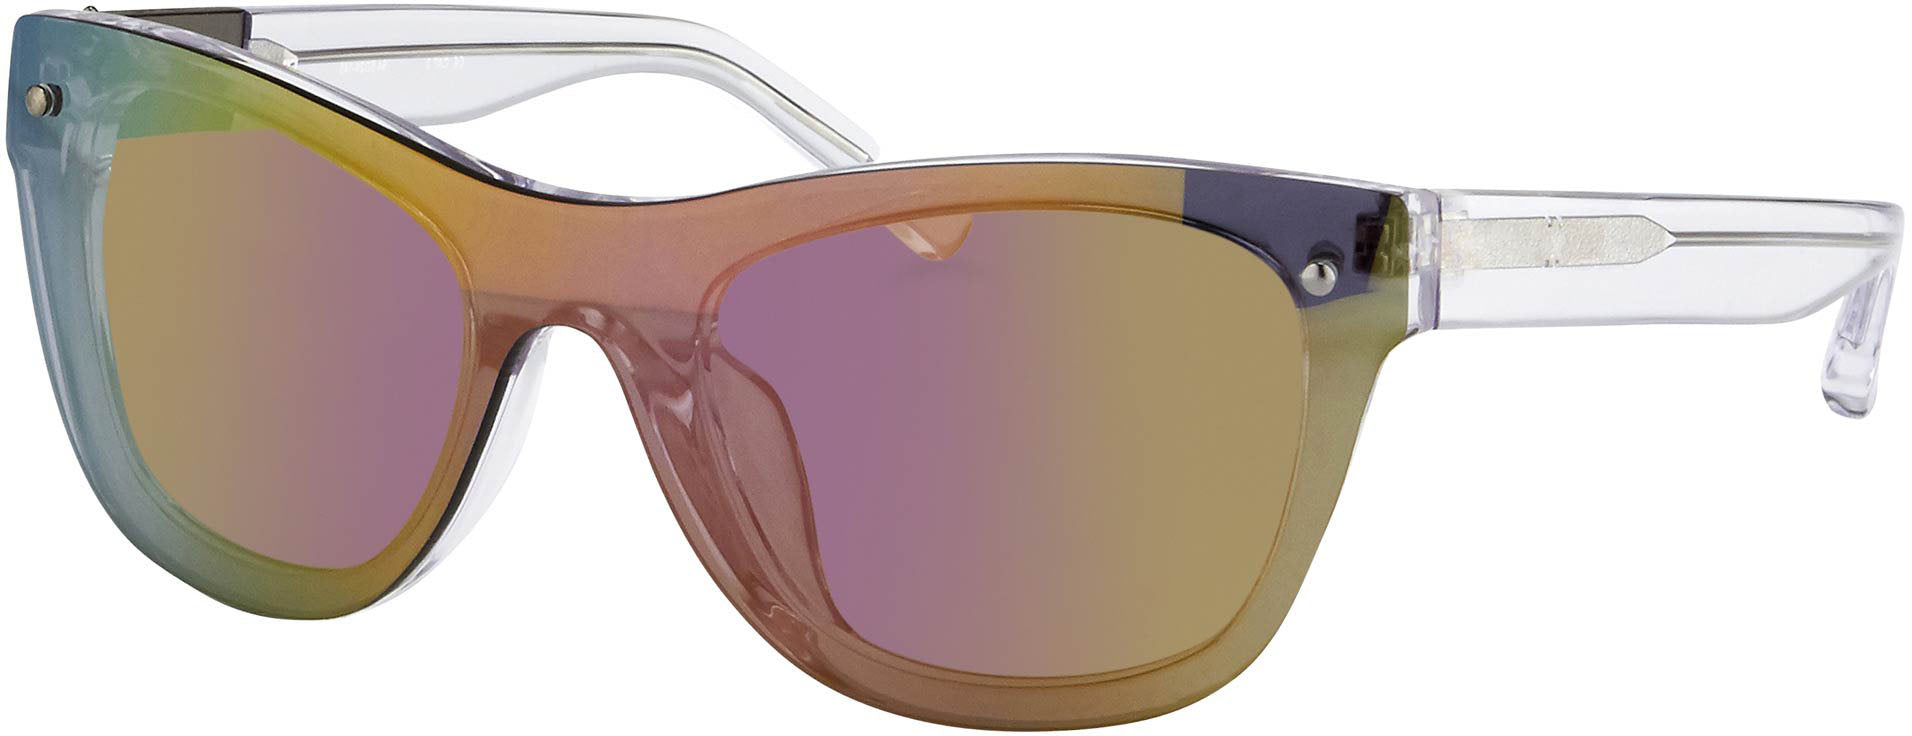 Color_PL34C7SUN - Phillip Lim 34 C7 D-Frame Sunglasses